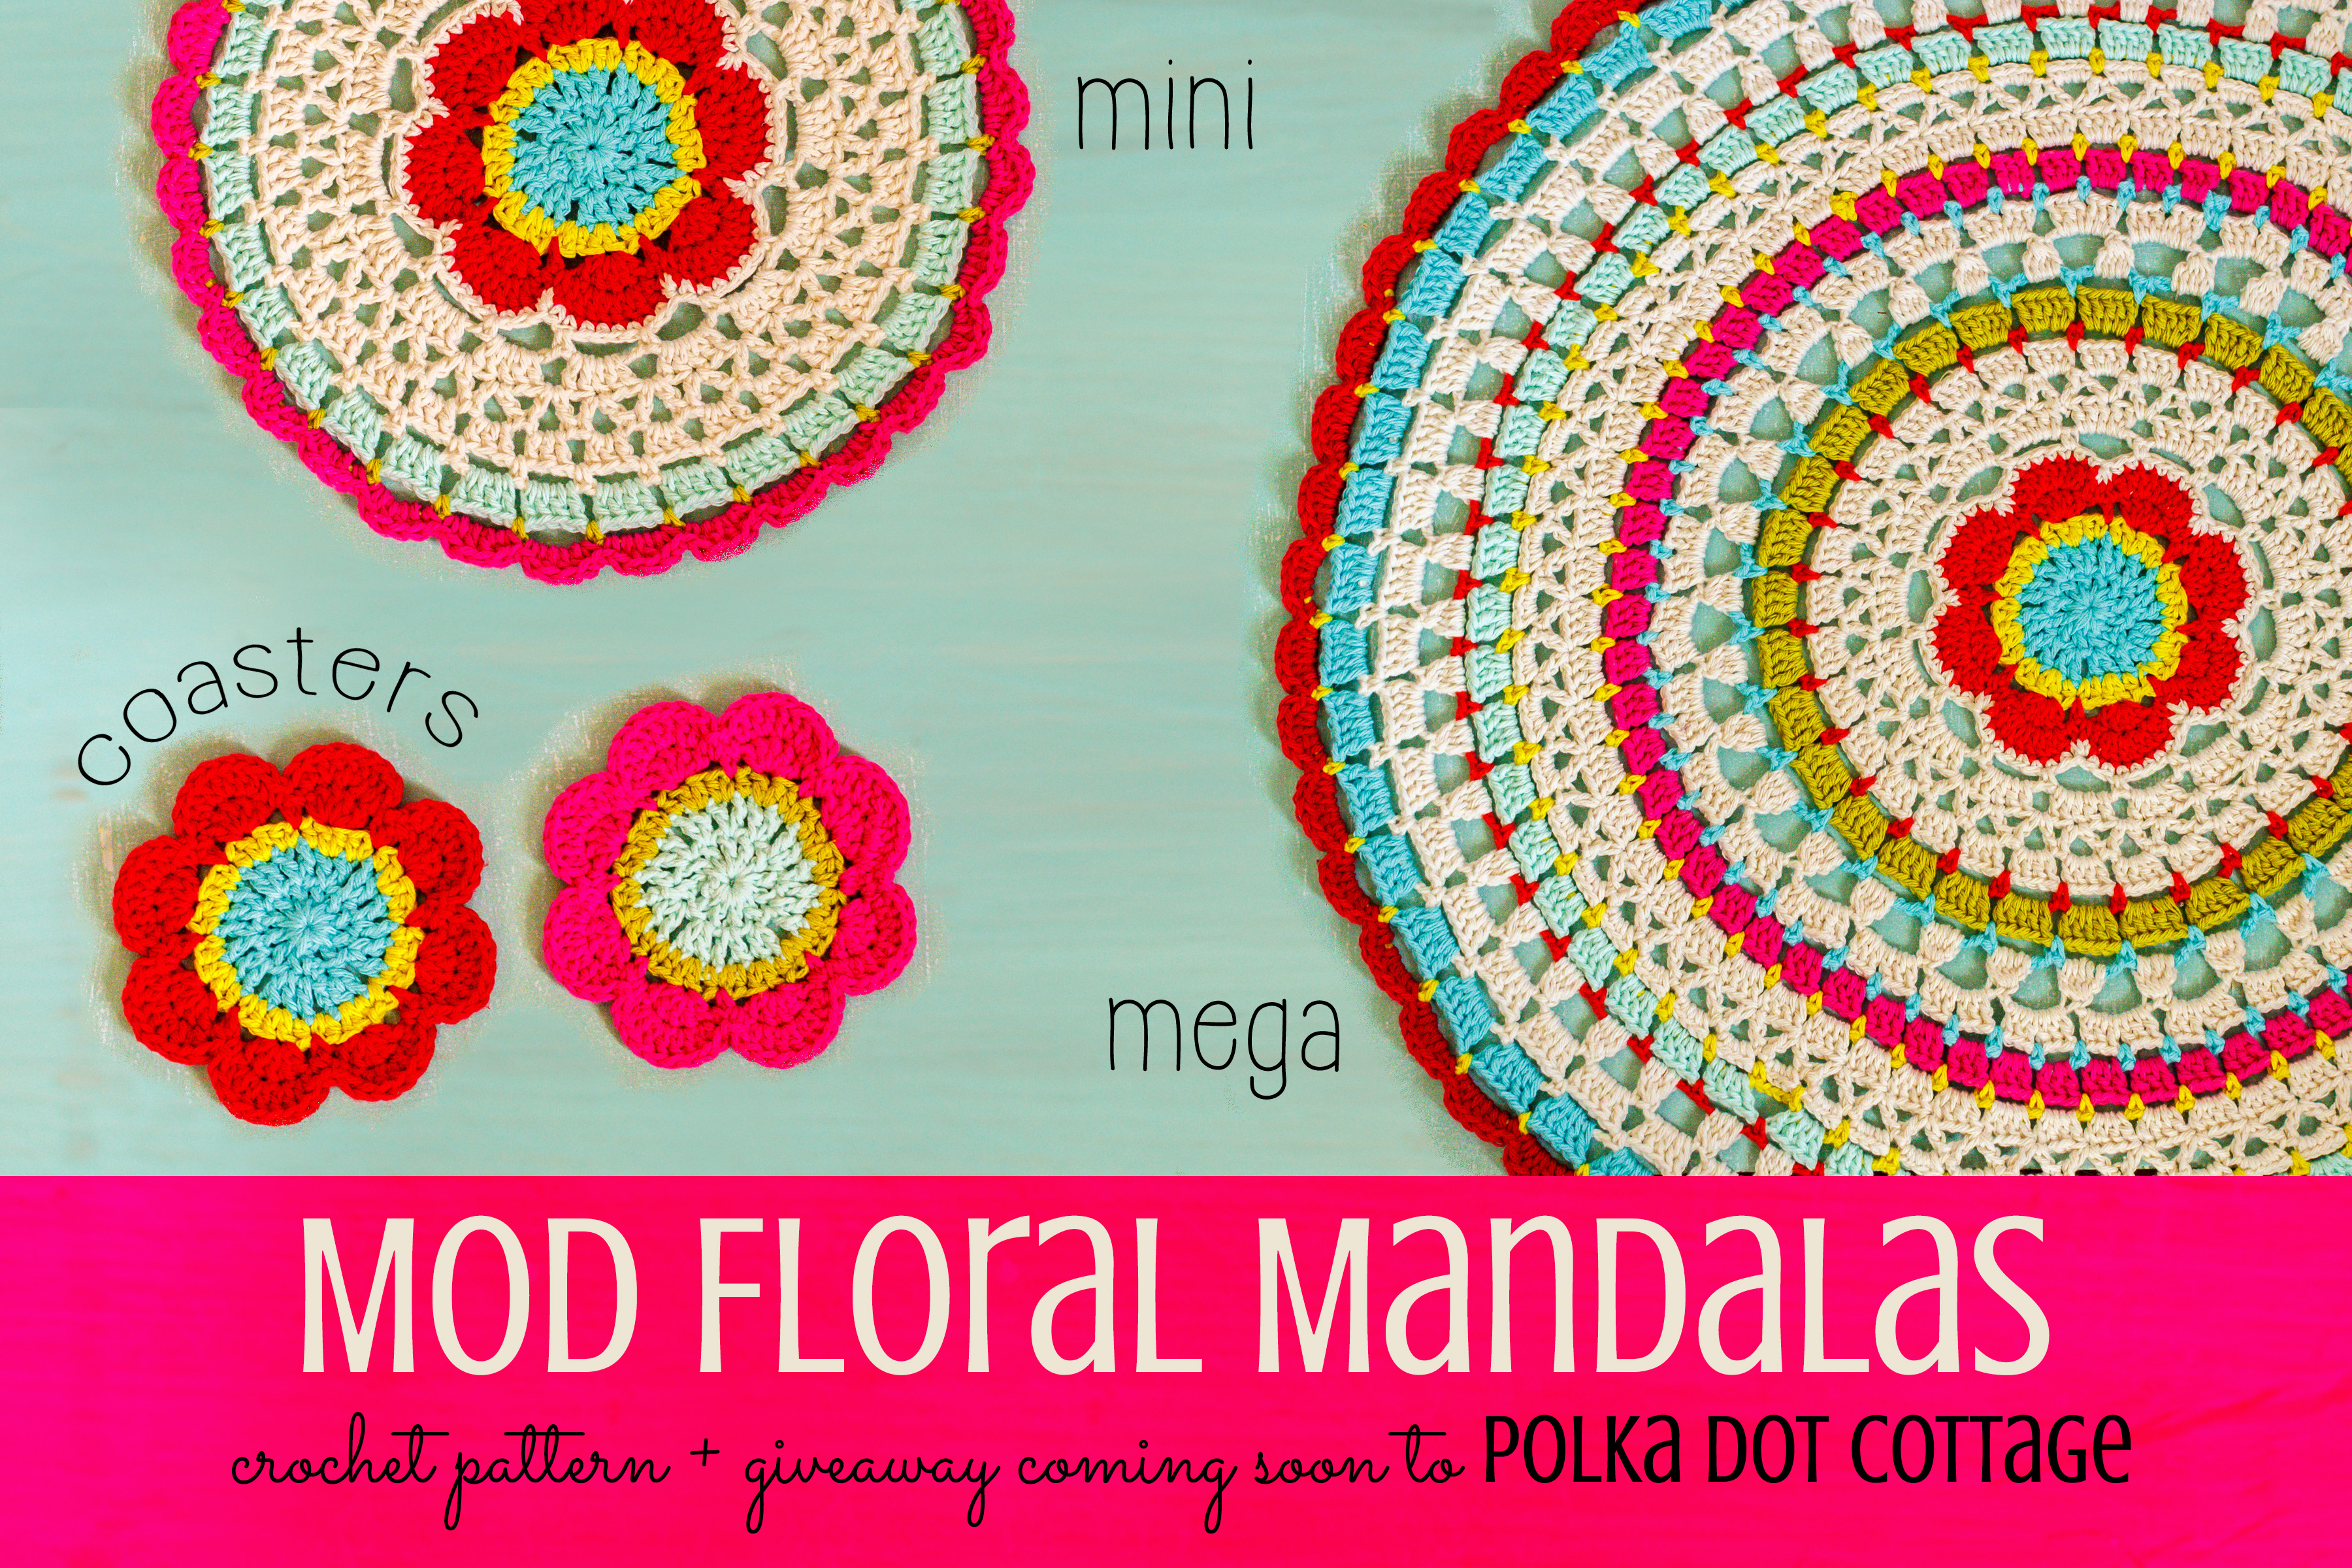 Mod Floral Mandalas at Polka Dot Cottage